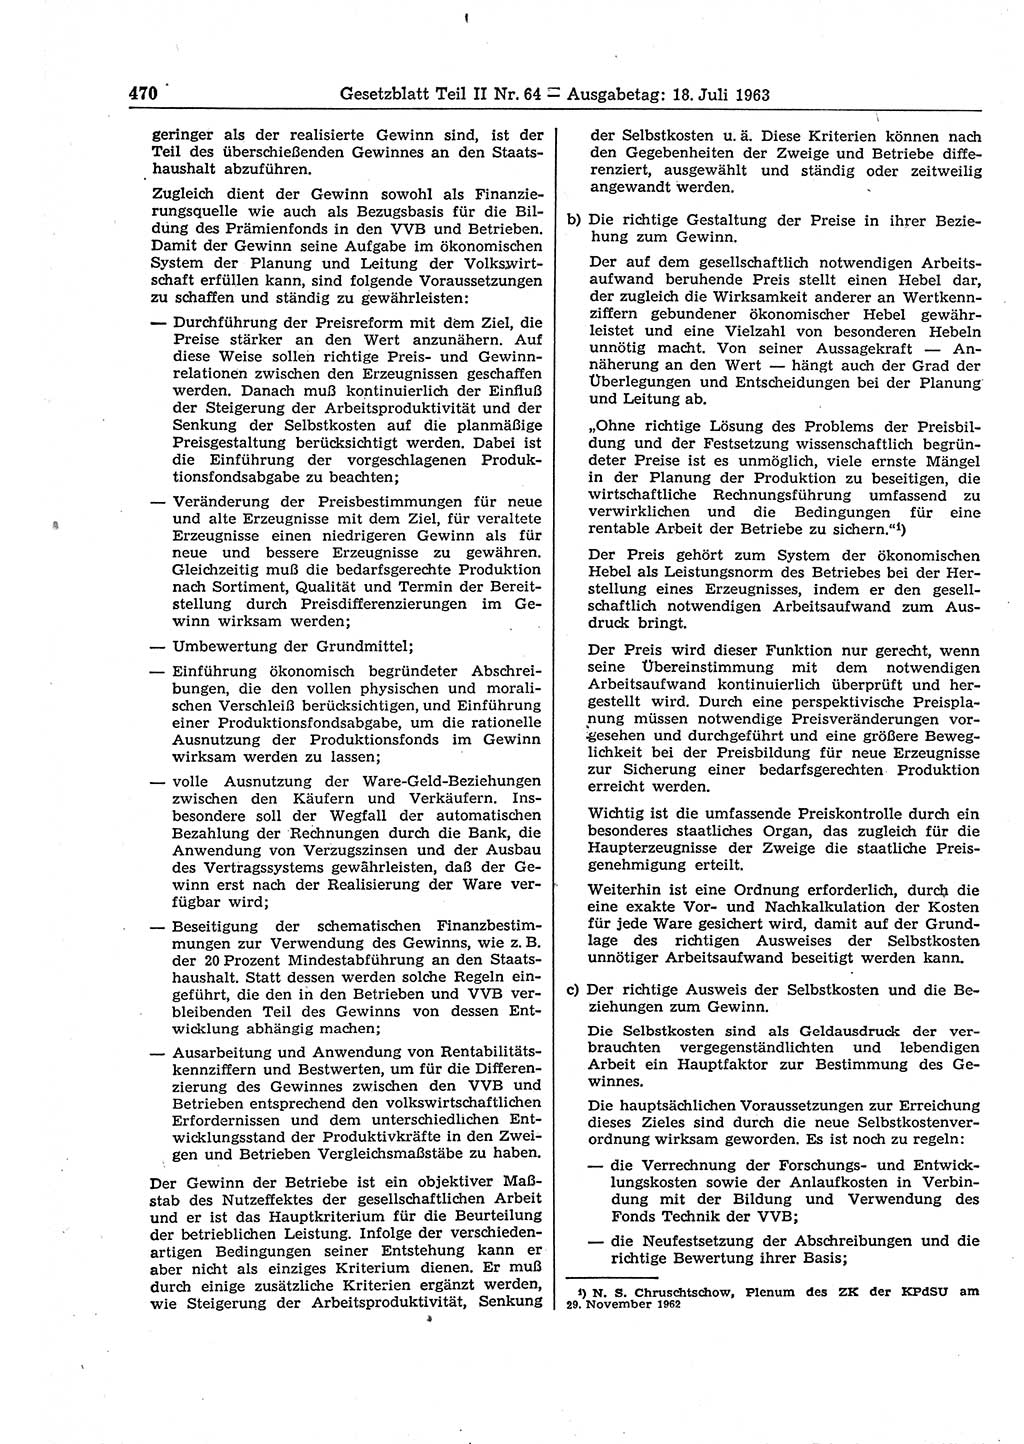 Gesetzblatt (GBl.) der Deutschen Demokratischen Republik (DDR) Teil ⅠⅠ 1963, Seite 470 (GBl. DDR ⅠⅠ 1963, S. 470)